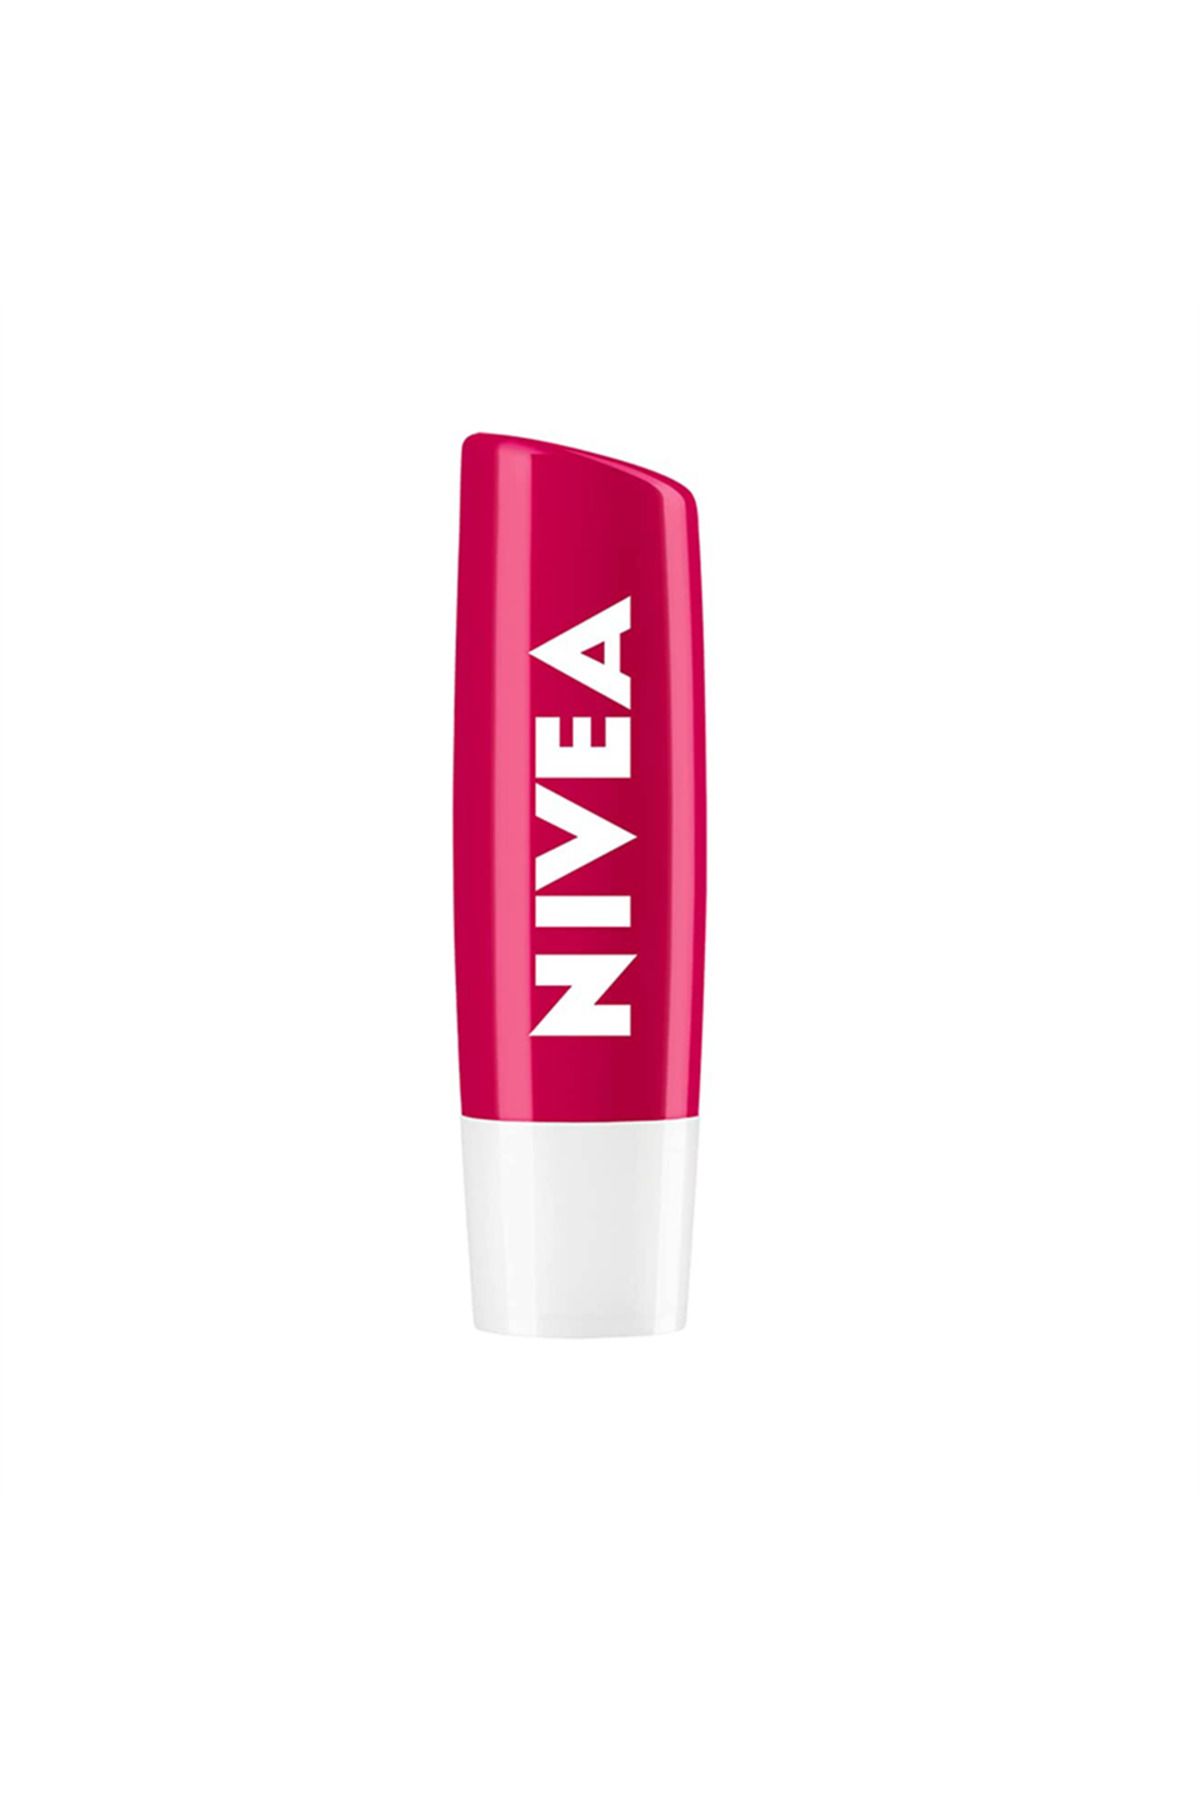 NIVEA Lip Stick Kiraz Işıltısı